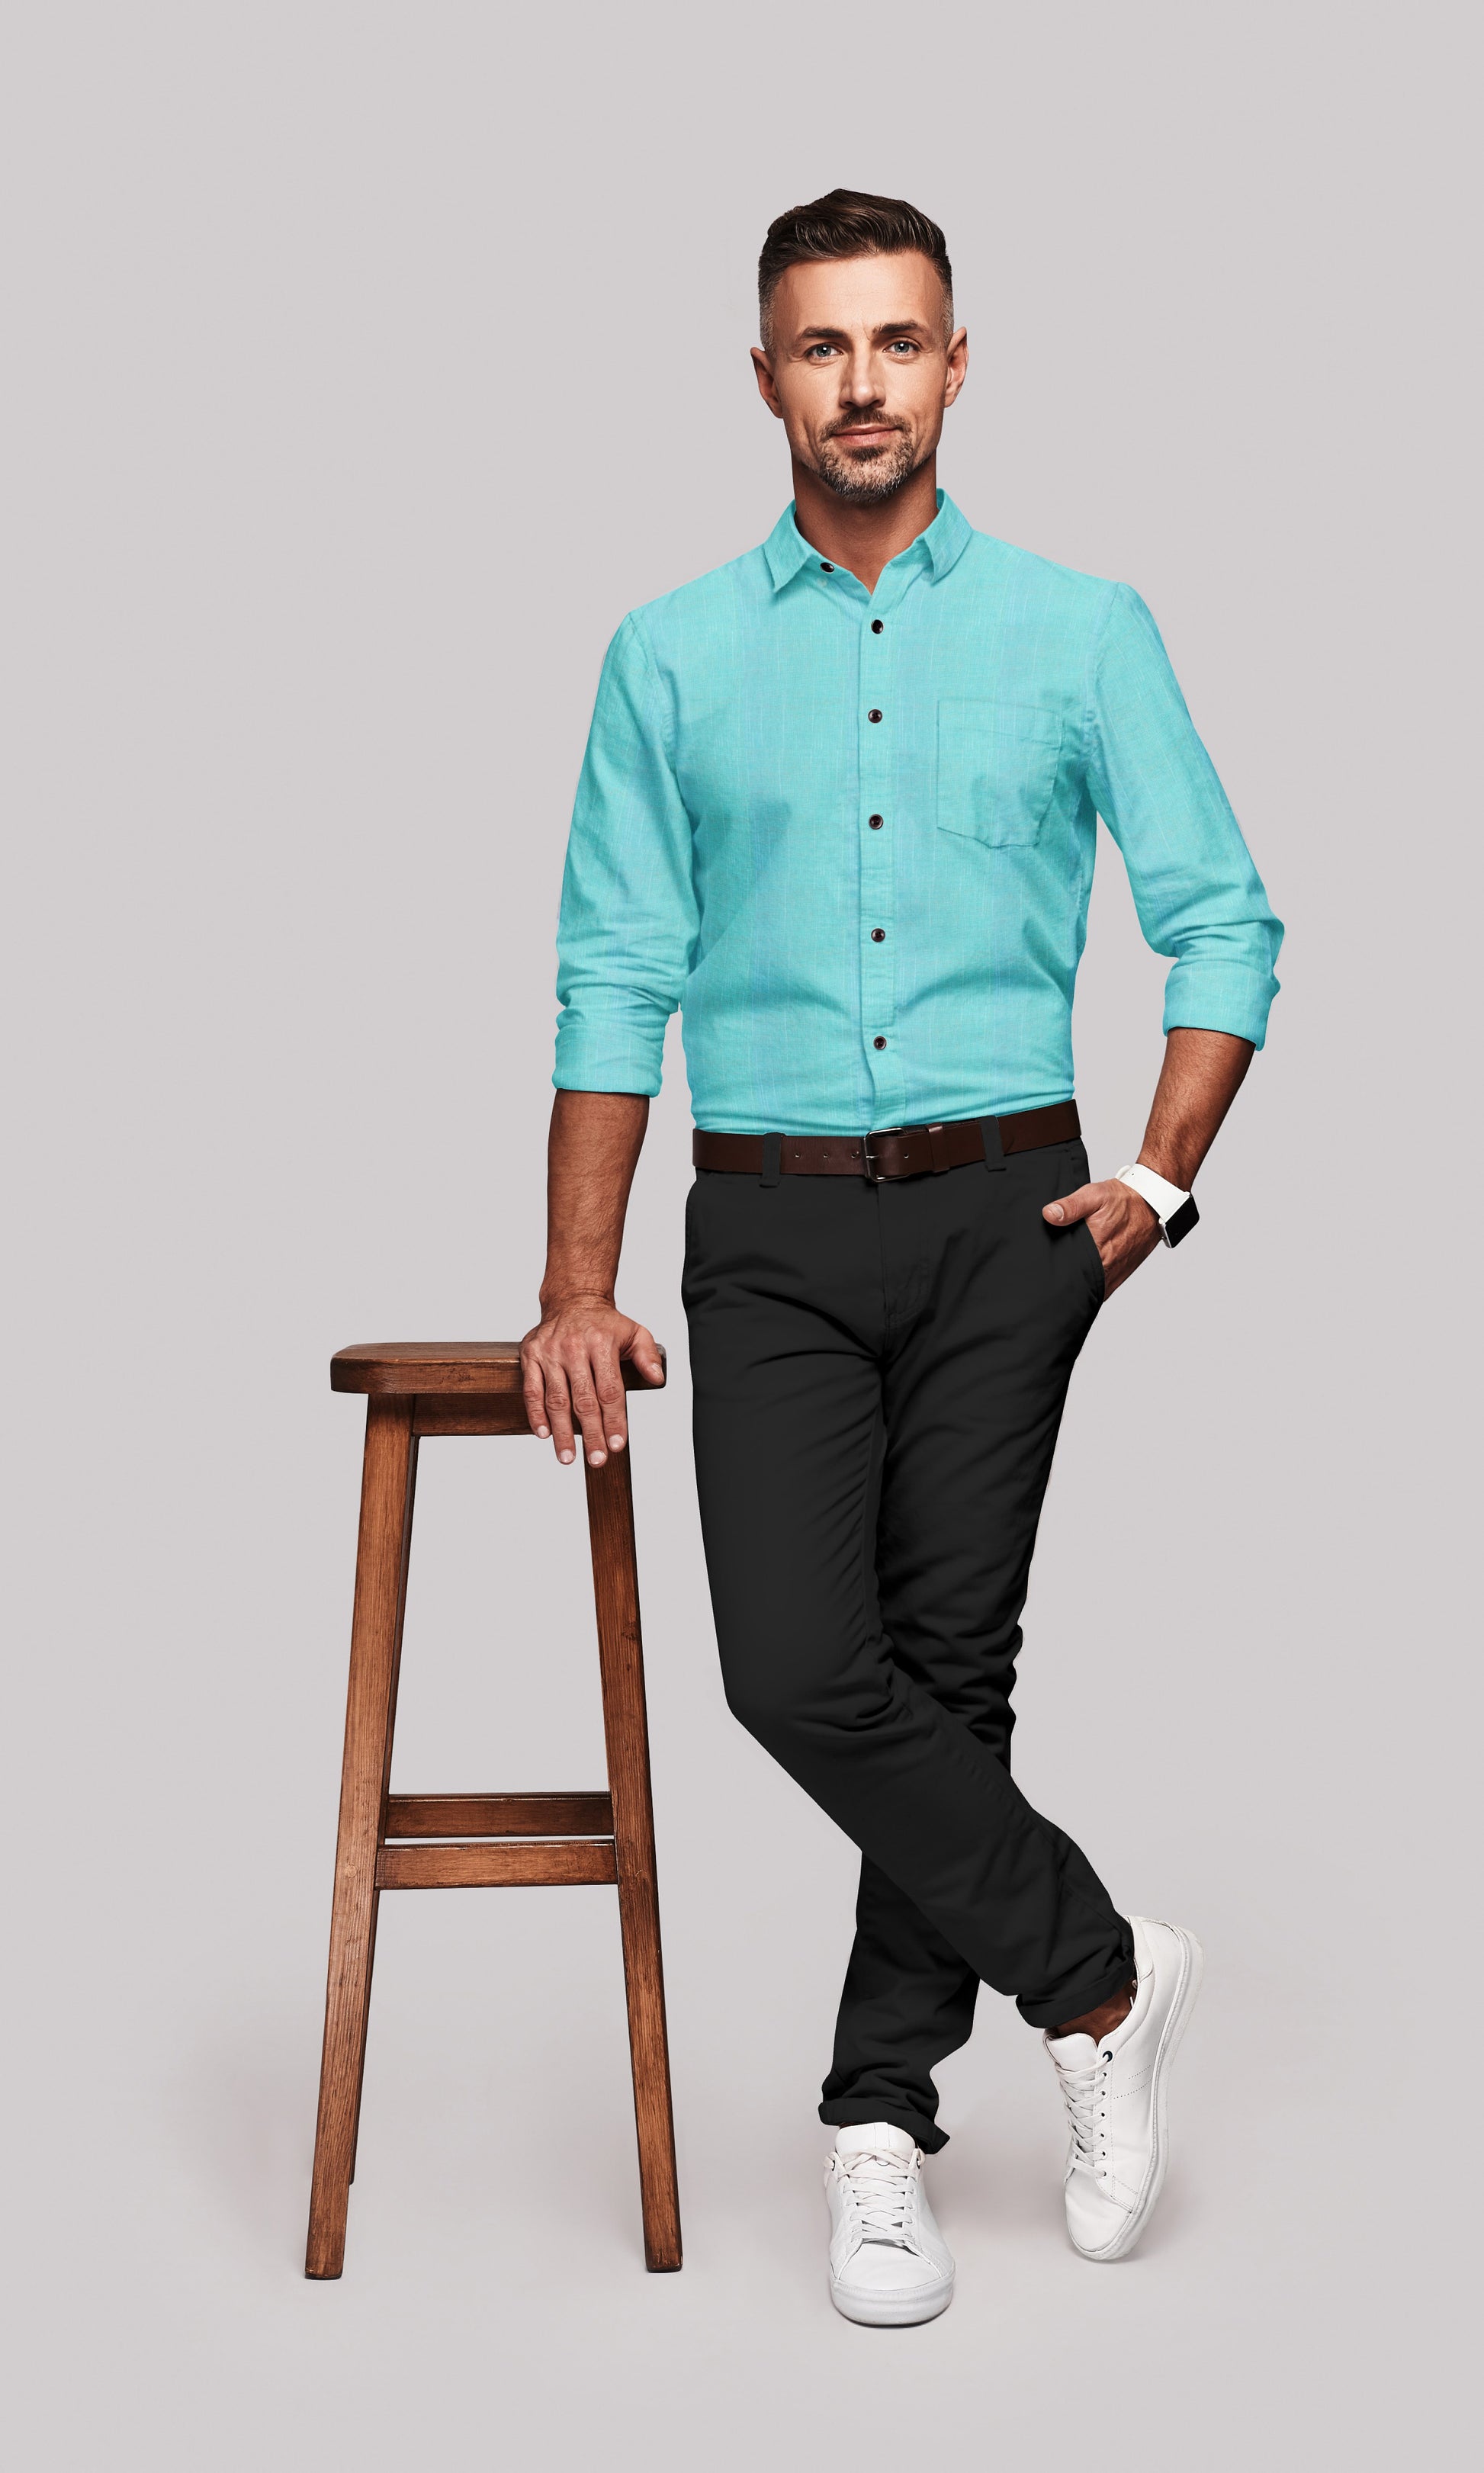 Turquoise Blue Men's Cotton Linen Shirt